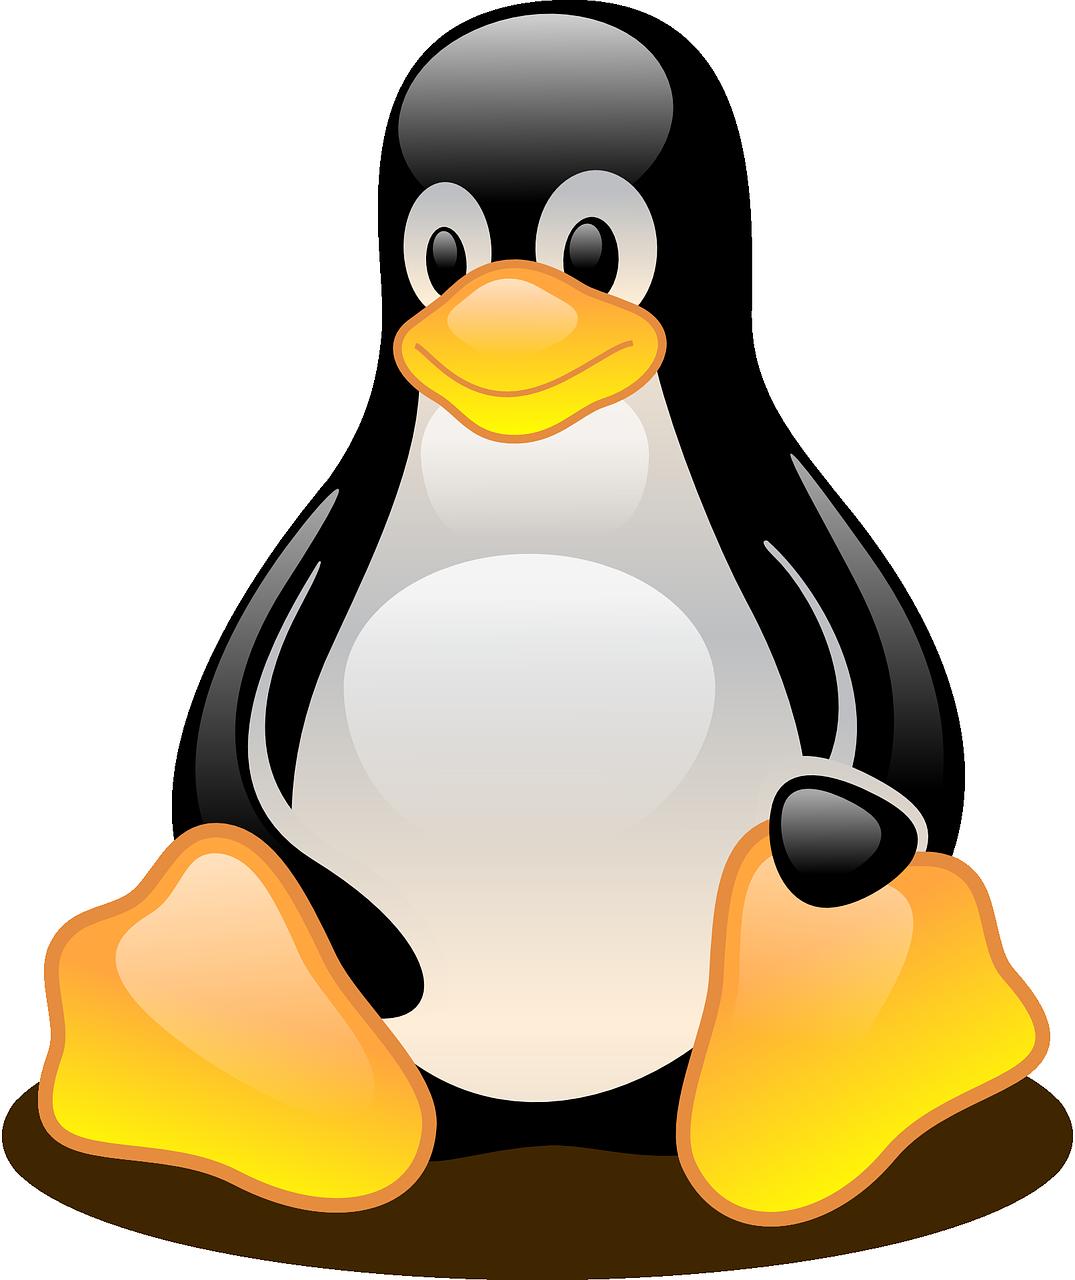 Linux User Group weitet Support-Angebot in Bern aus